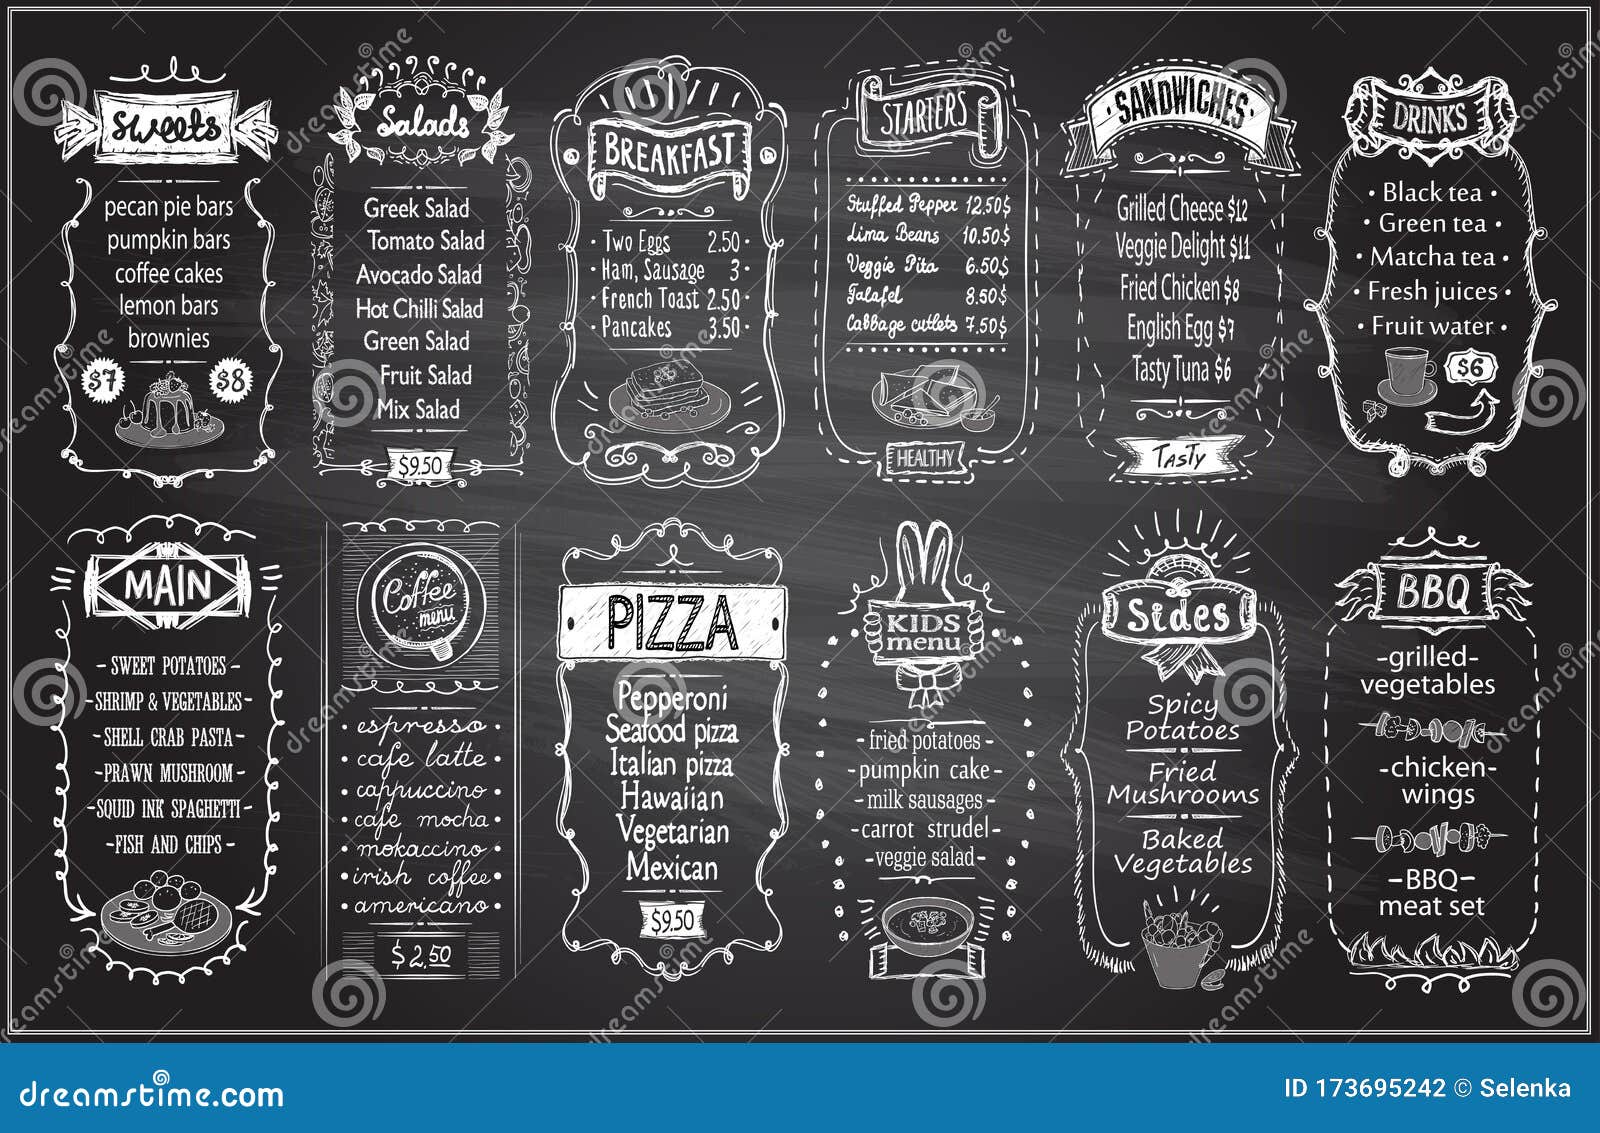 chalk menu set on a blackboard - sweets, salads, breakfast, starters, sandwiches, etc